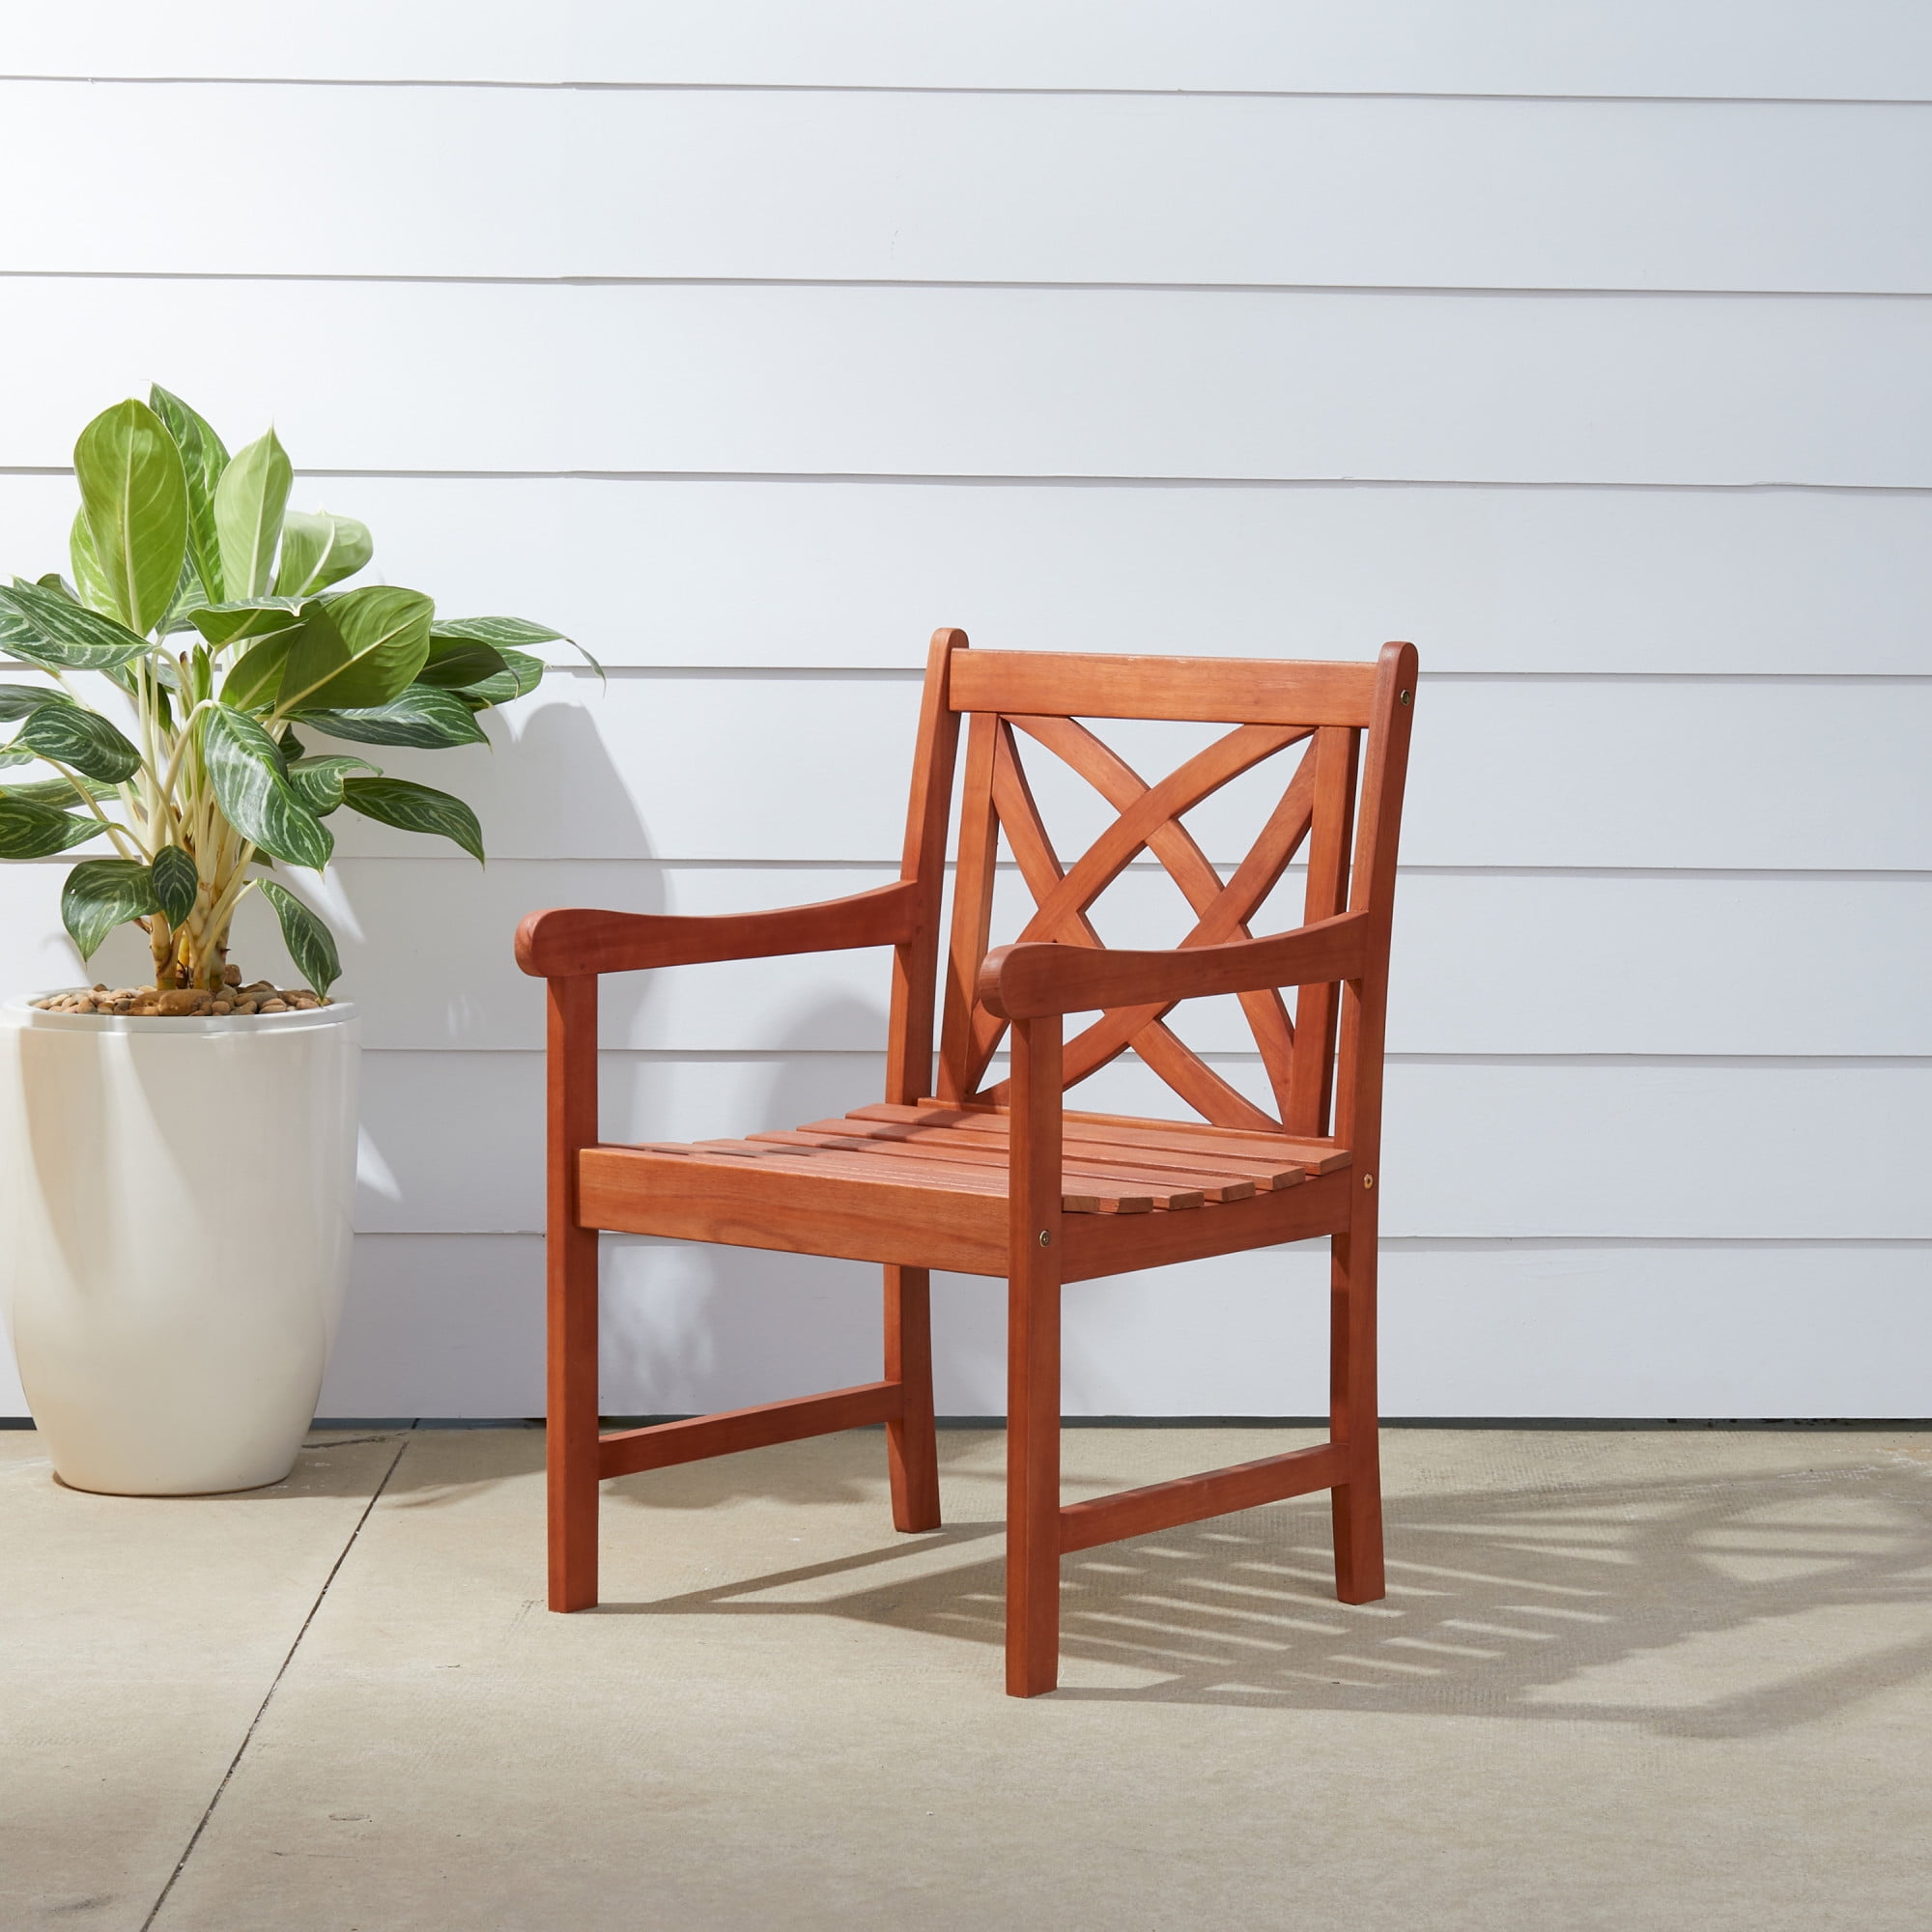 1 Arm Chair Natural Furinno FG17318 Tioman Outdoor Hardwood Patio Furniture Mediterranean Armchair with Cushion